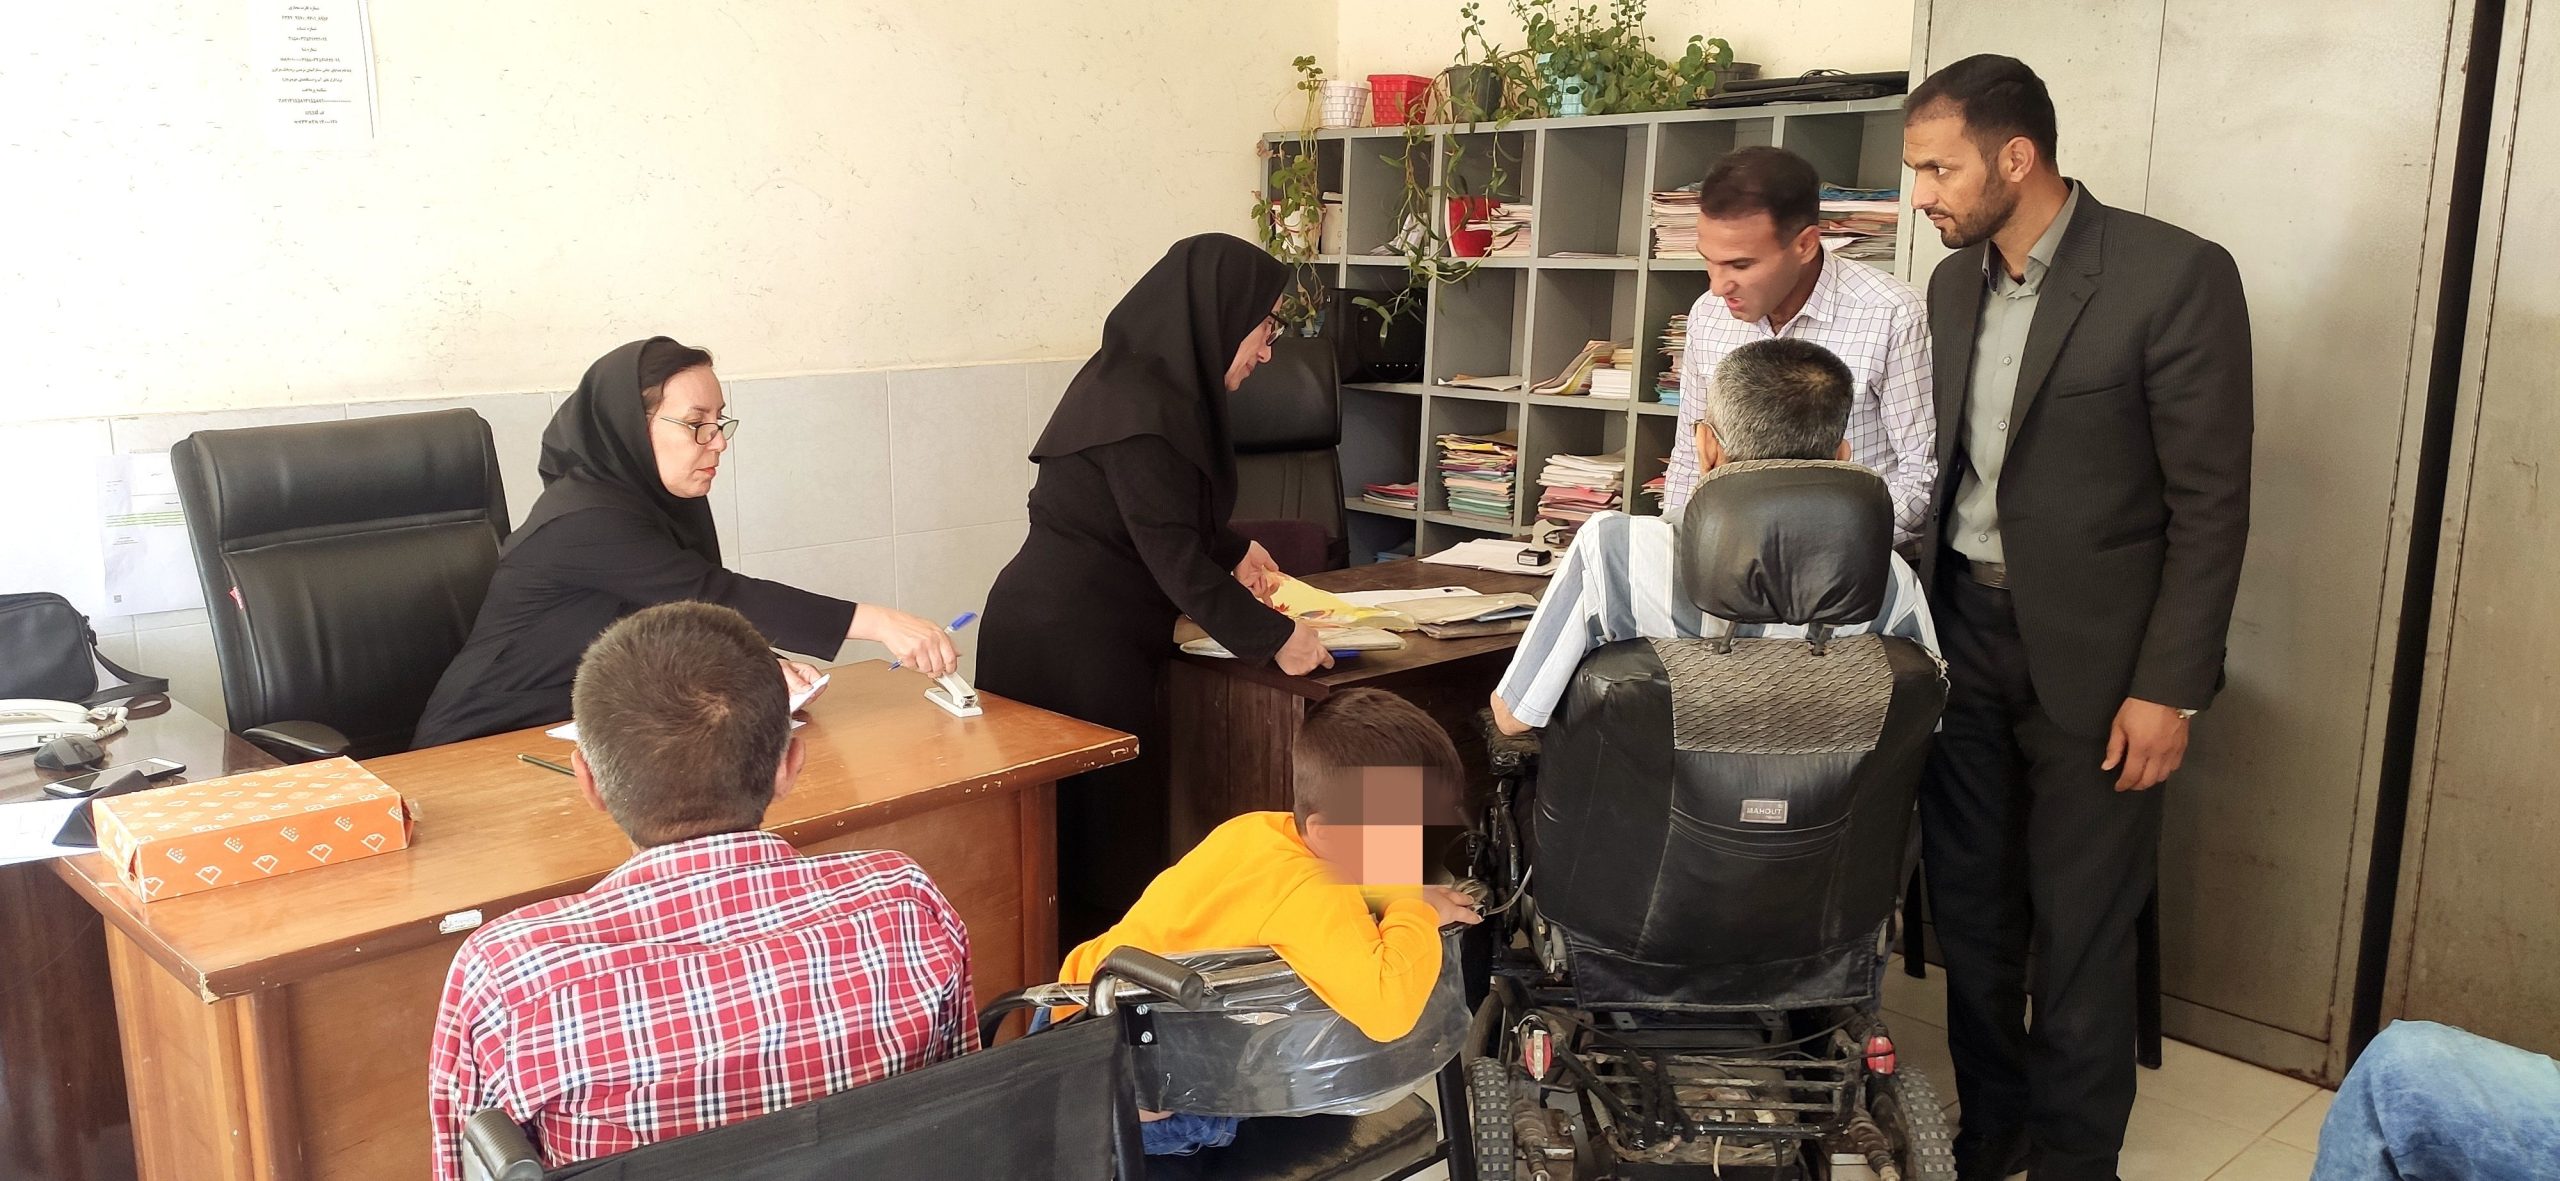 سومین کمیسیون پزشکی ویژه معلولین خرامه برگزار شد